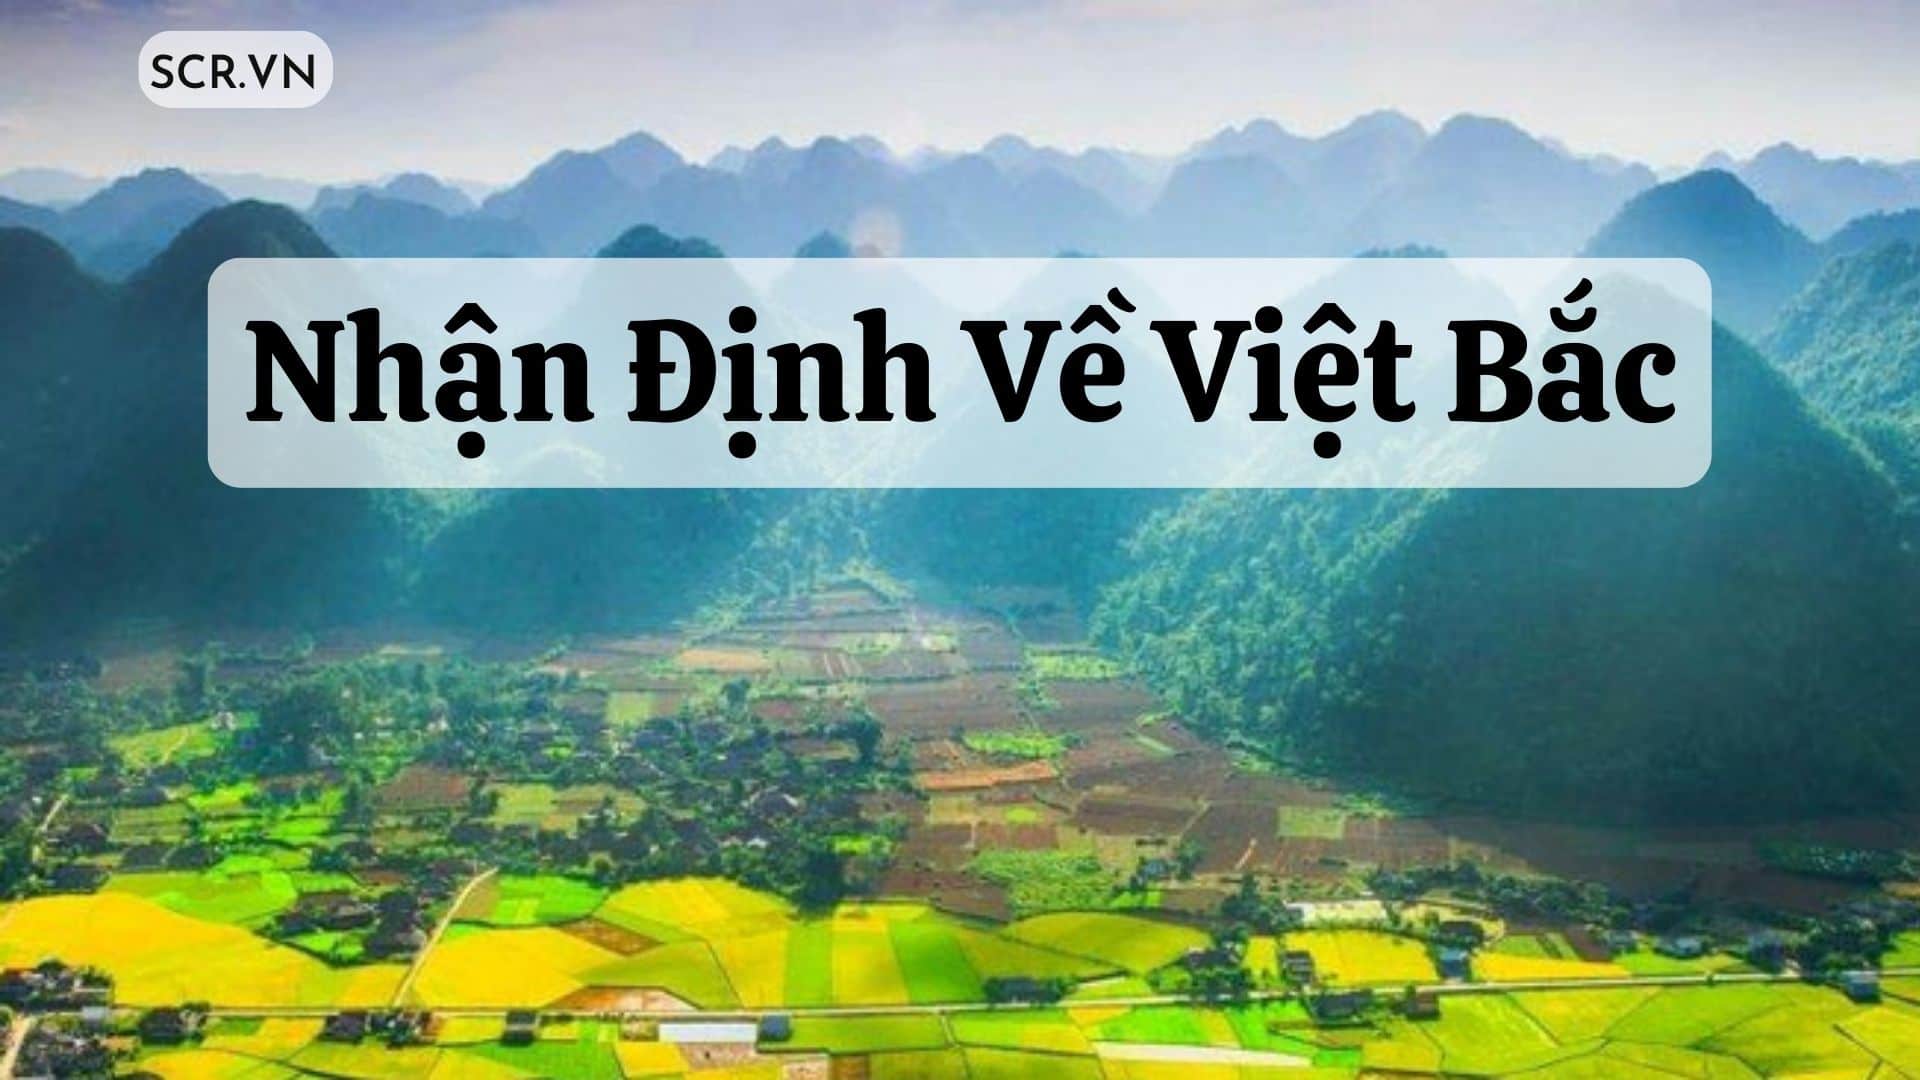 Nhận Định Về Việt Bắc